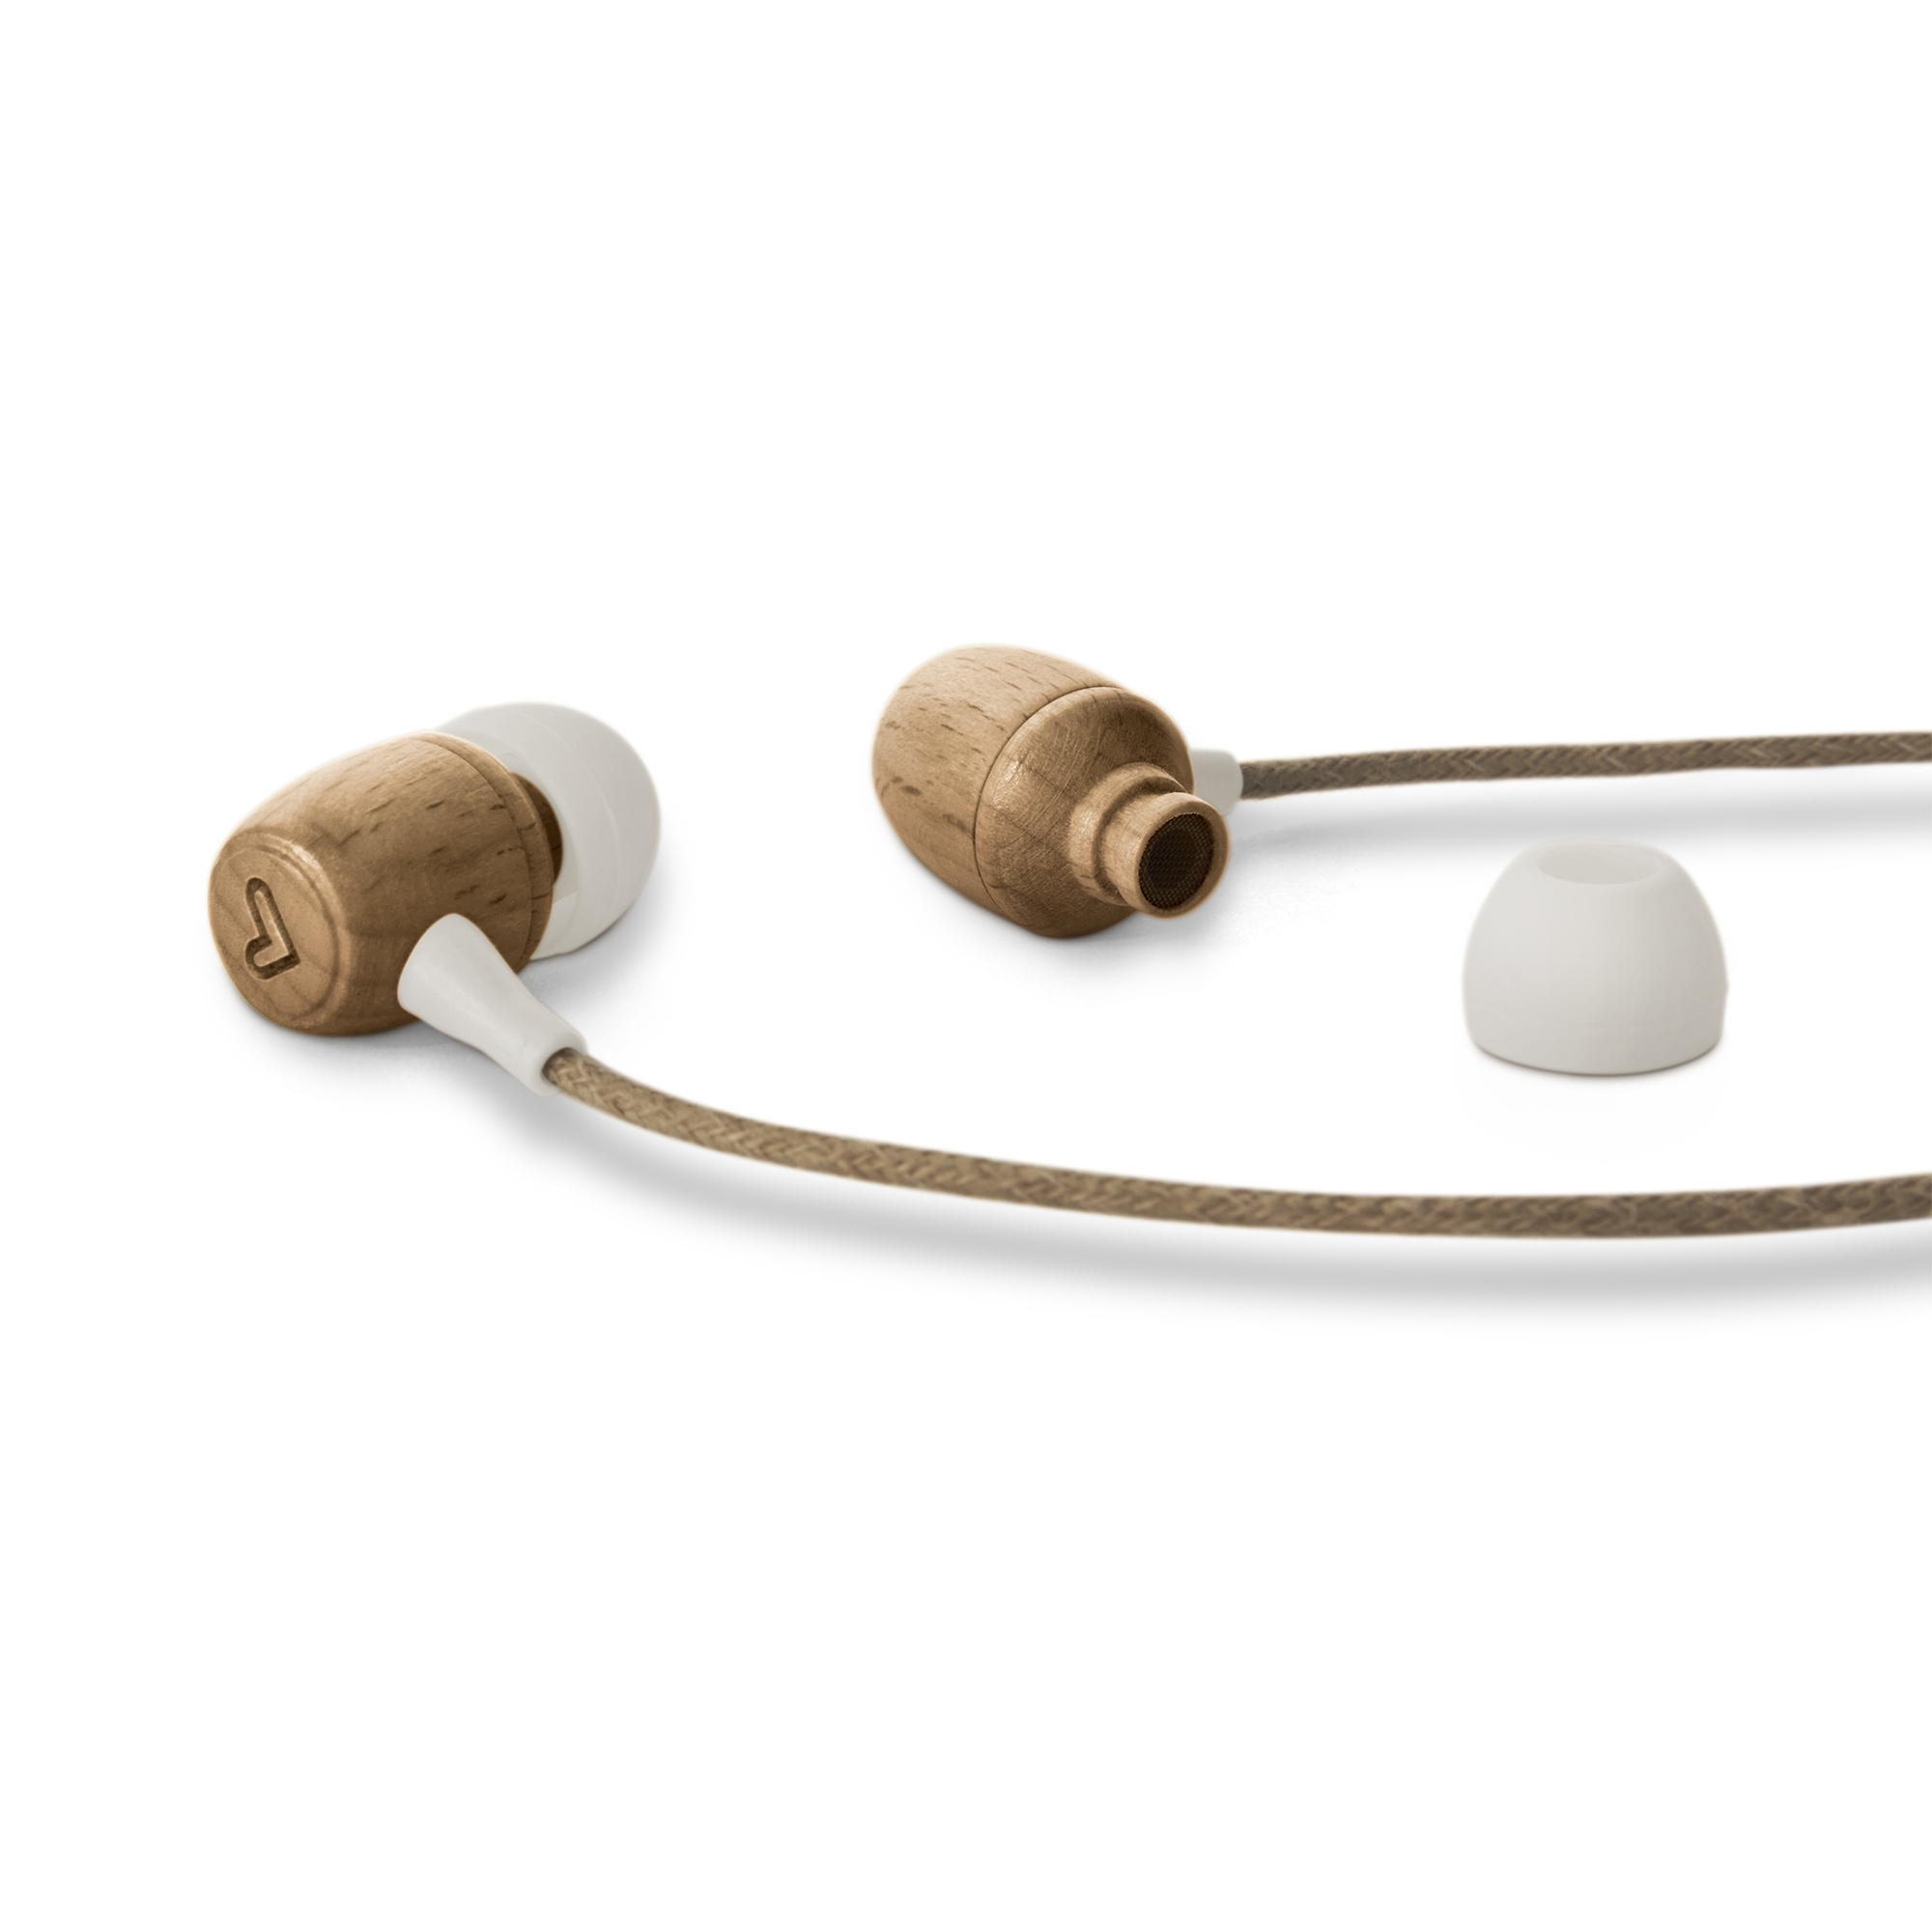 Écouteurs intra-auriculaires fabriqués en matériaux écologiques